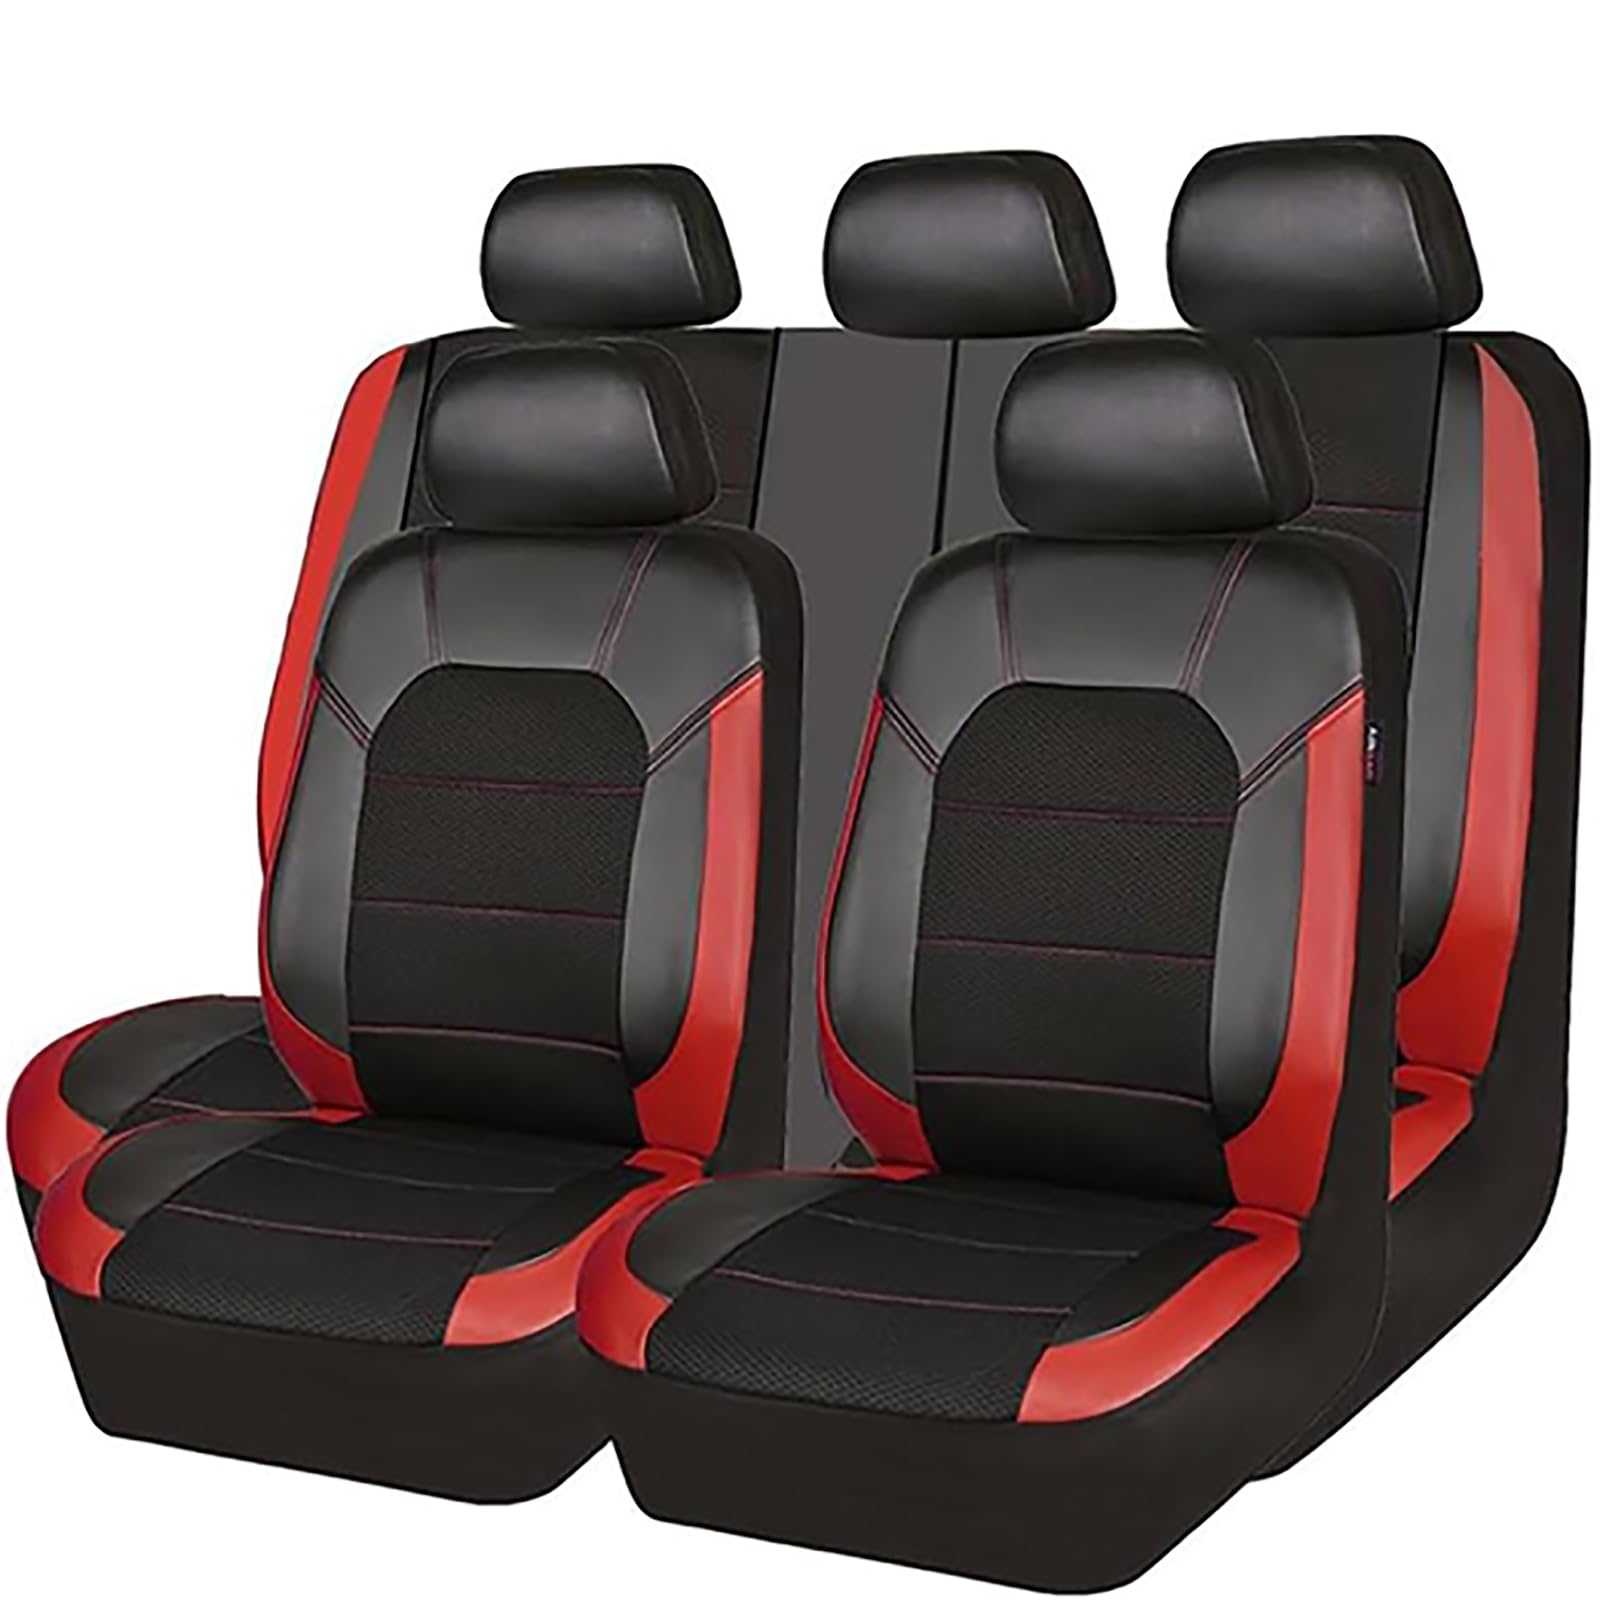 EYHQKRTR Auto Leder Sitzkissen Für Mazda CX-5 1. Generation (KE) 2011-2016, 5 Sitzer Full Set SitzbezüGe Schonbezug Vorne Rückbank Sitzschutz Compatible Airbag Innenraum Zubehör,D/Red von EYHQKRTR